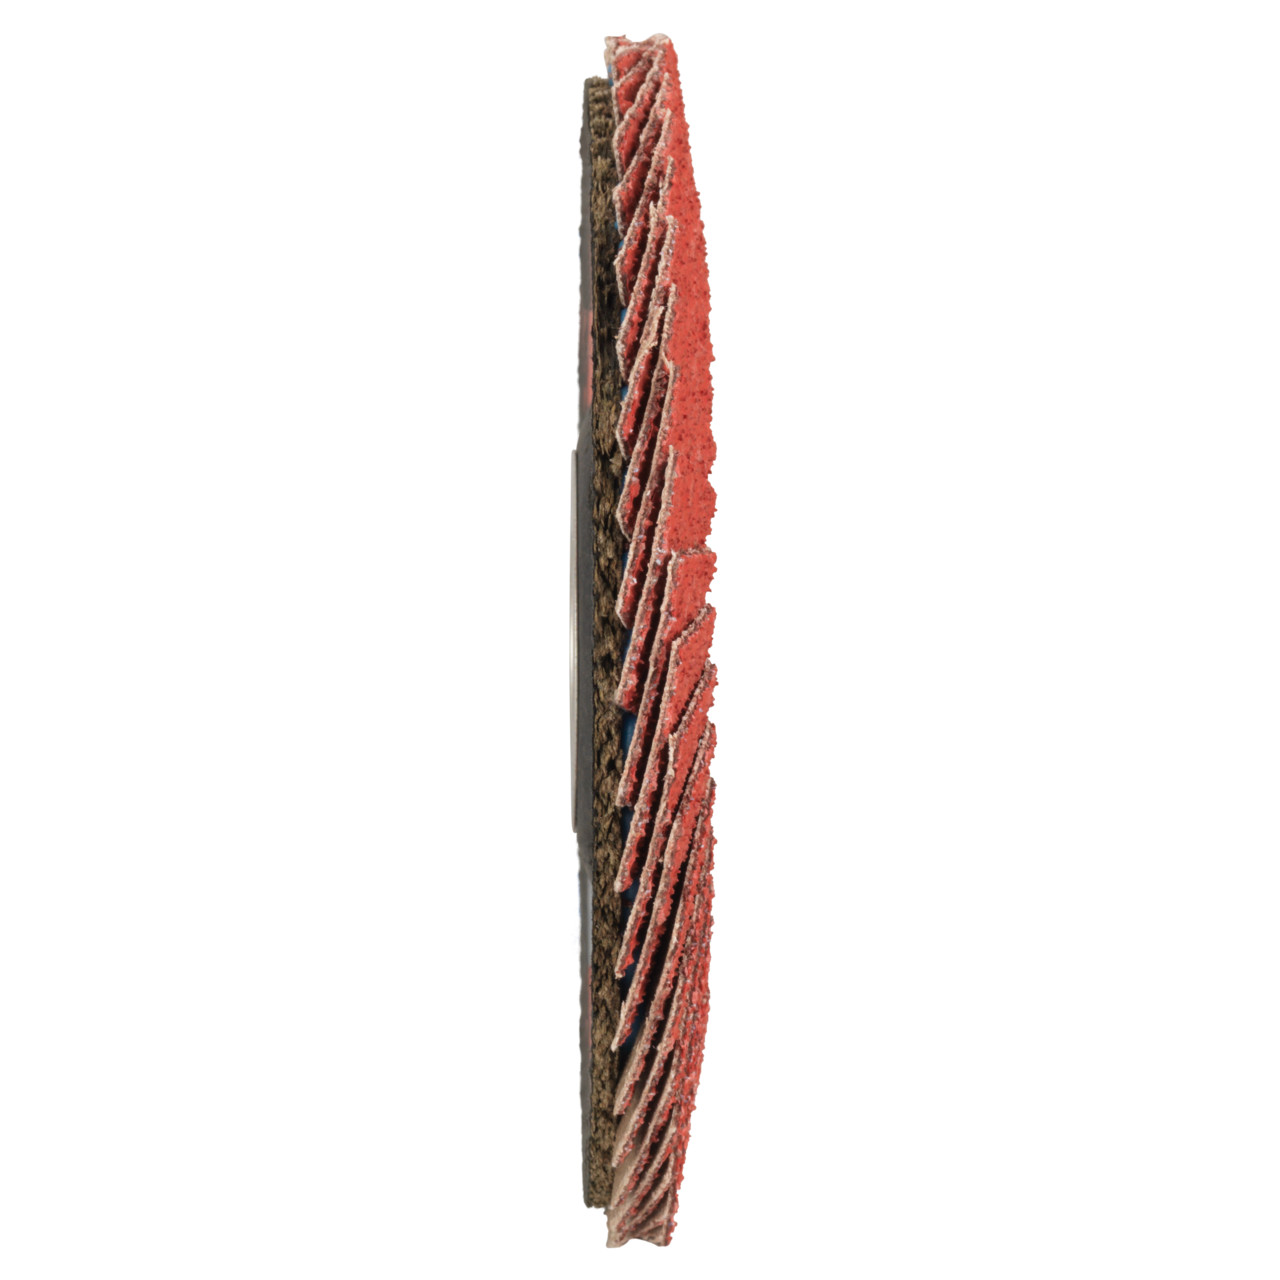 TYROLIT getande borgring DxH 115x22,2 CERAMIC voor roestvrij staal, P60, vorm: 27A - slingeruitvoering (glasvezeldragerhuisconstructie), Art. 645132